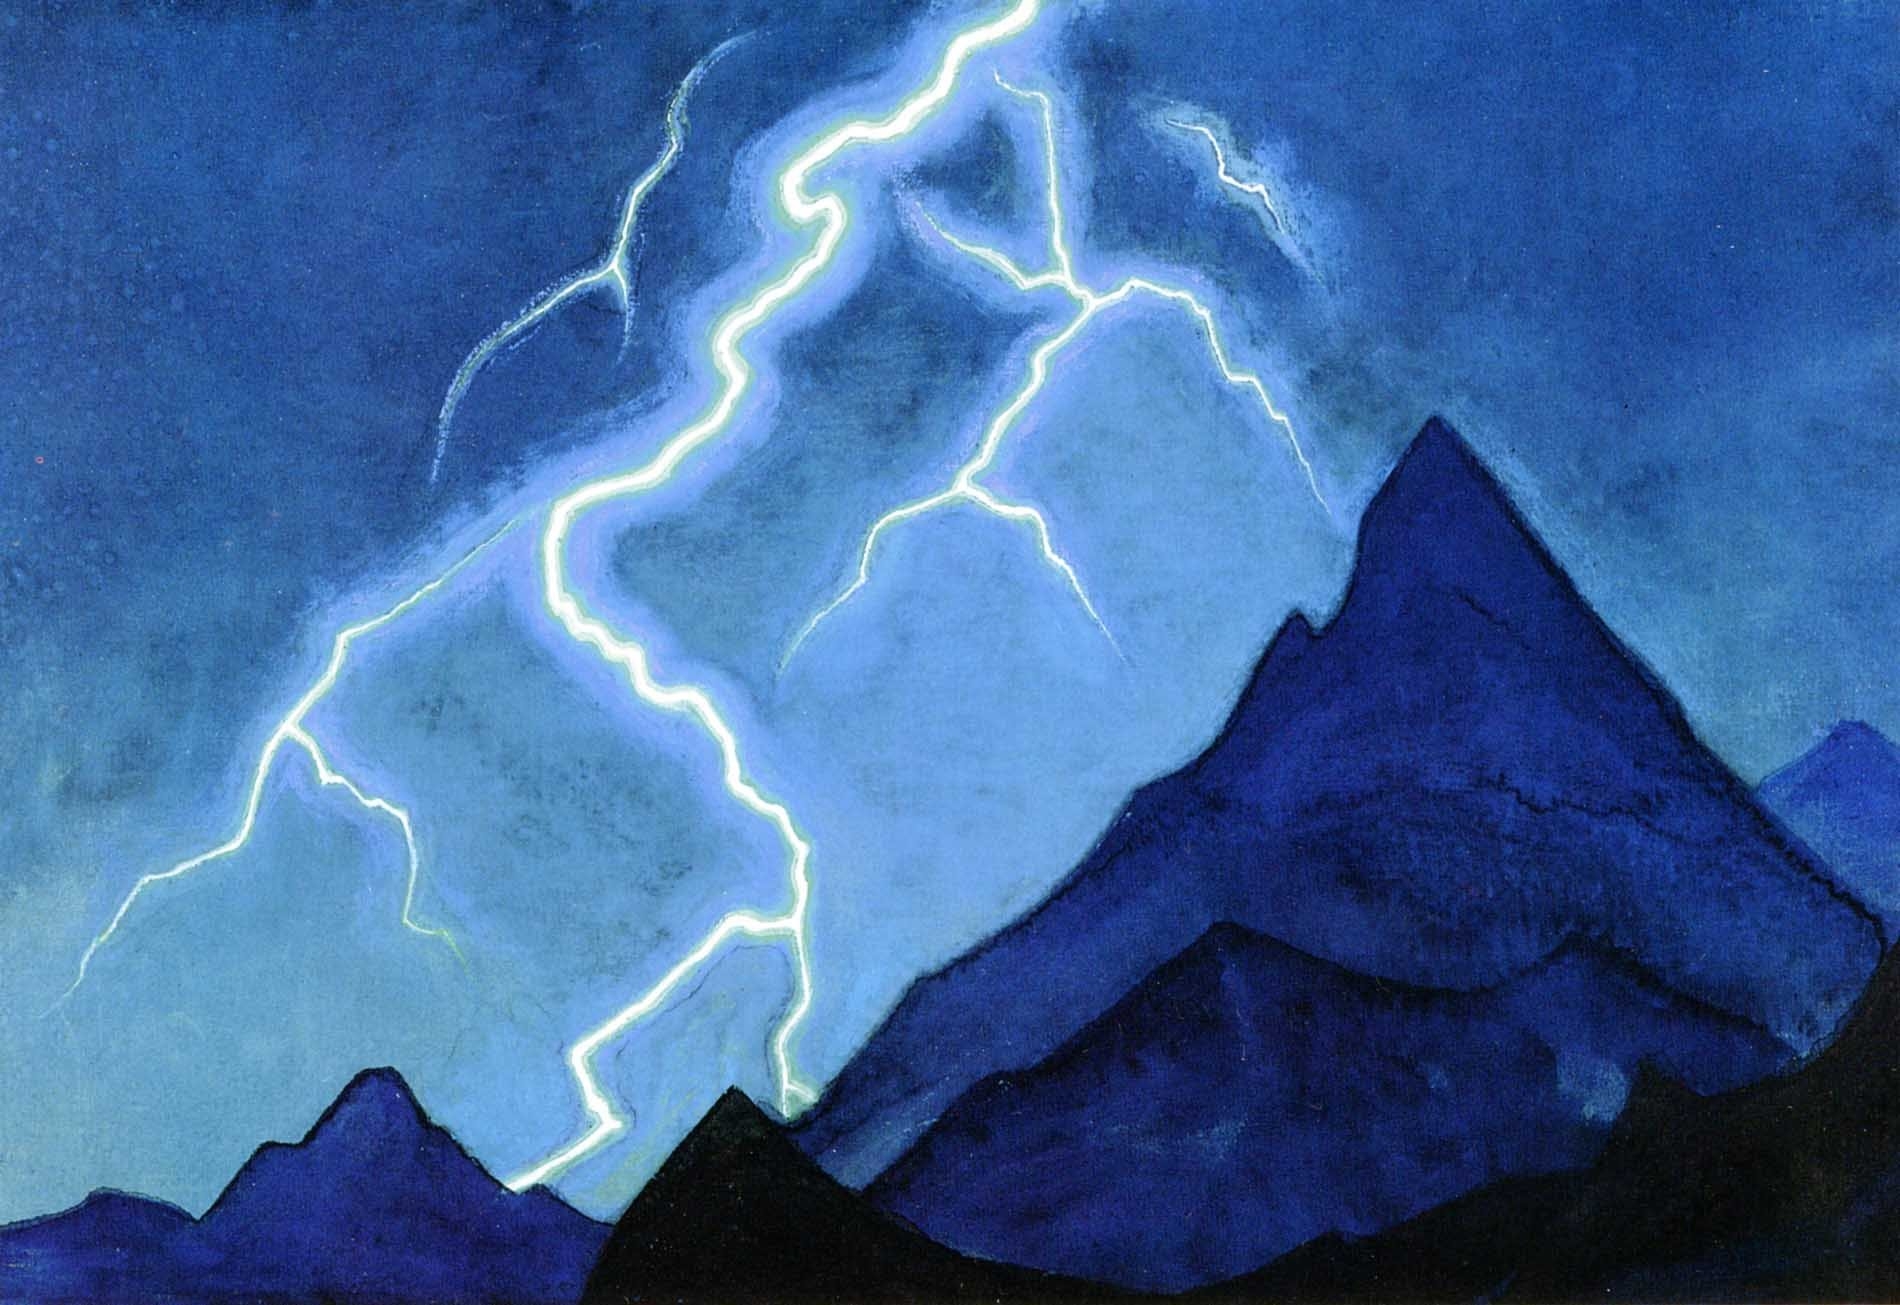 Определите какое явление природы изобразил художник пейзажи. Картина Рерих Зов неба молния. Рерих картина с молнией.